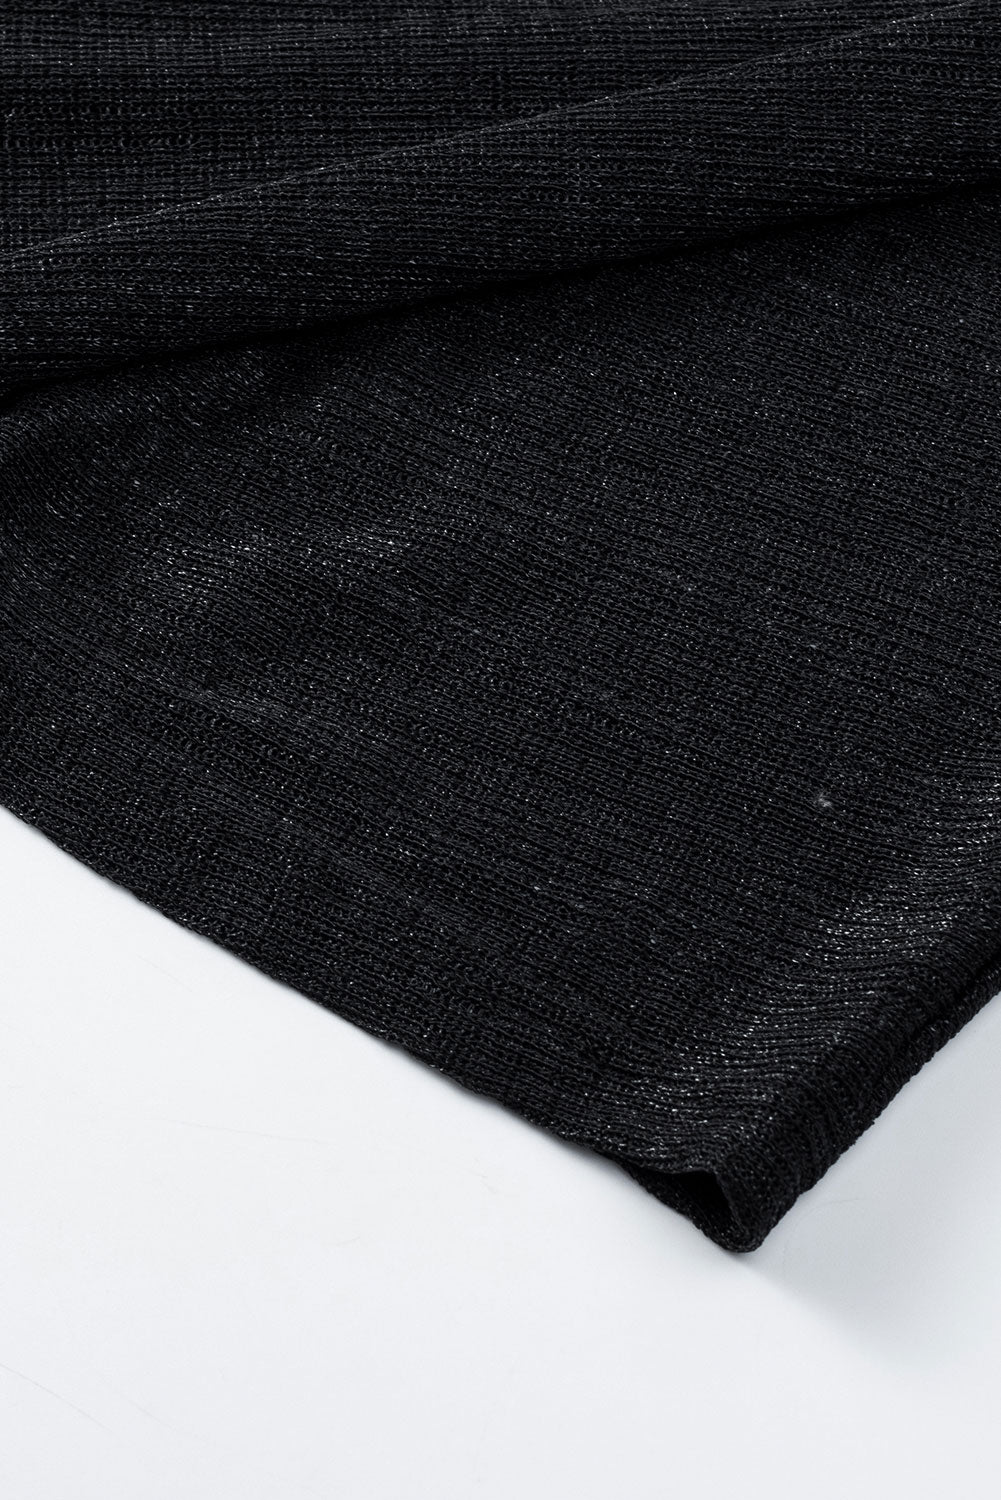 Cardigan noir à manches longues en tricot léger et transparent